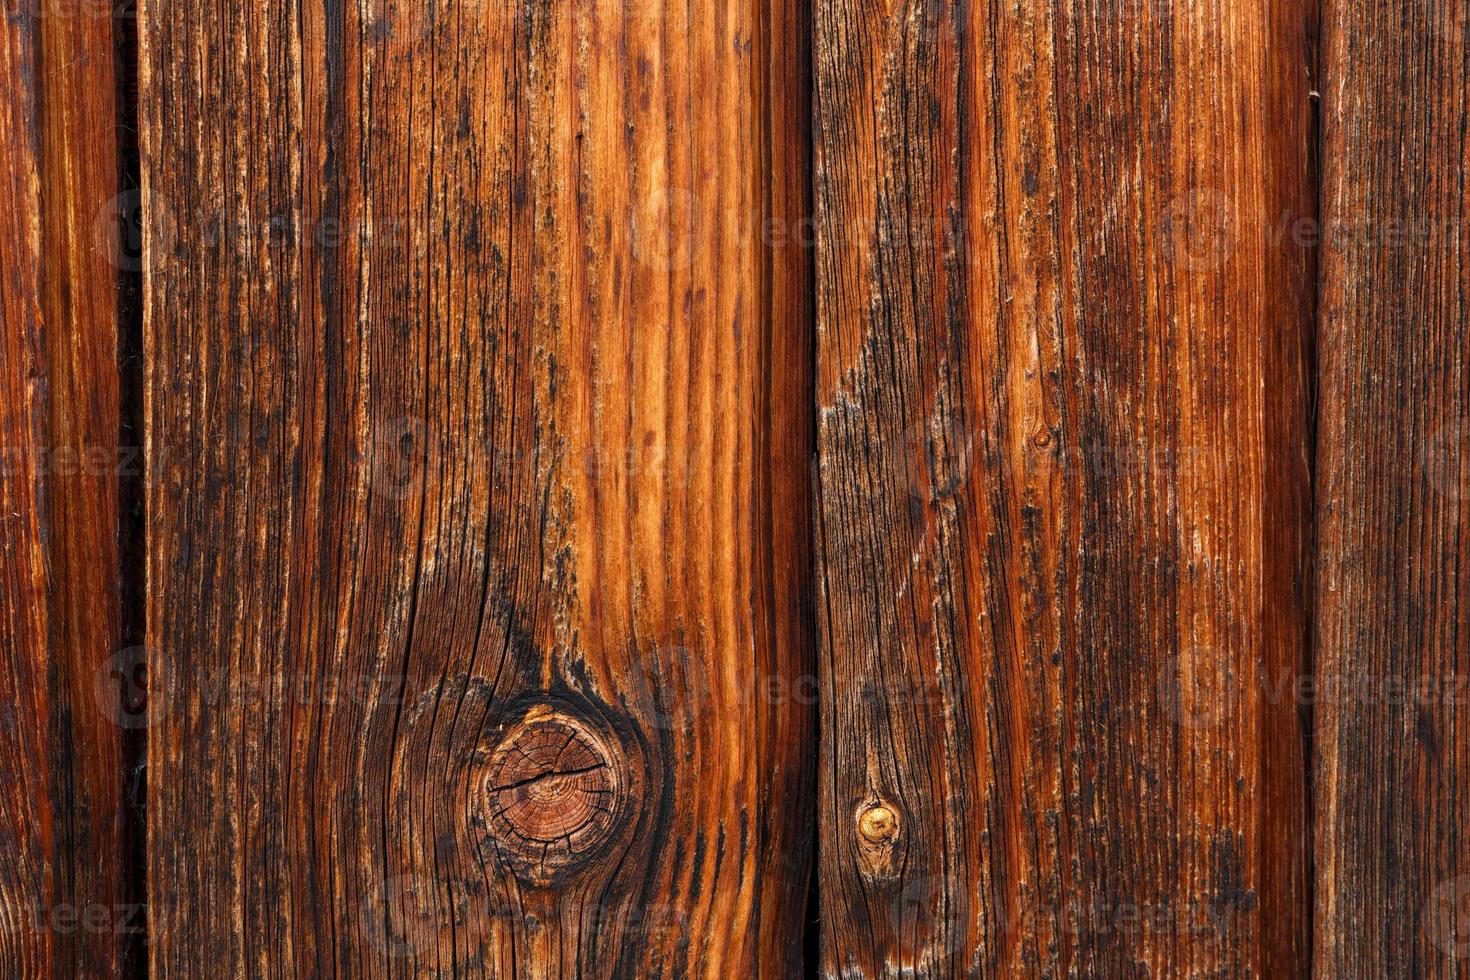 la superficie de las paredes de tablas de madera para el fondo. cierra la  madera vieja con una textura detallada. 8617432 Foto de stock en Vecteezy